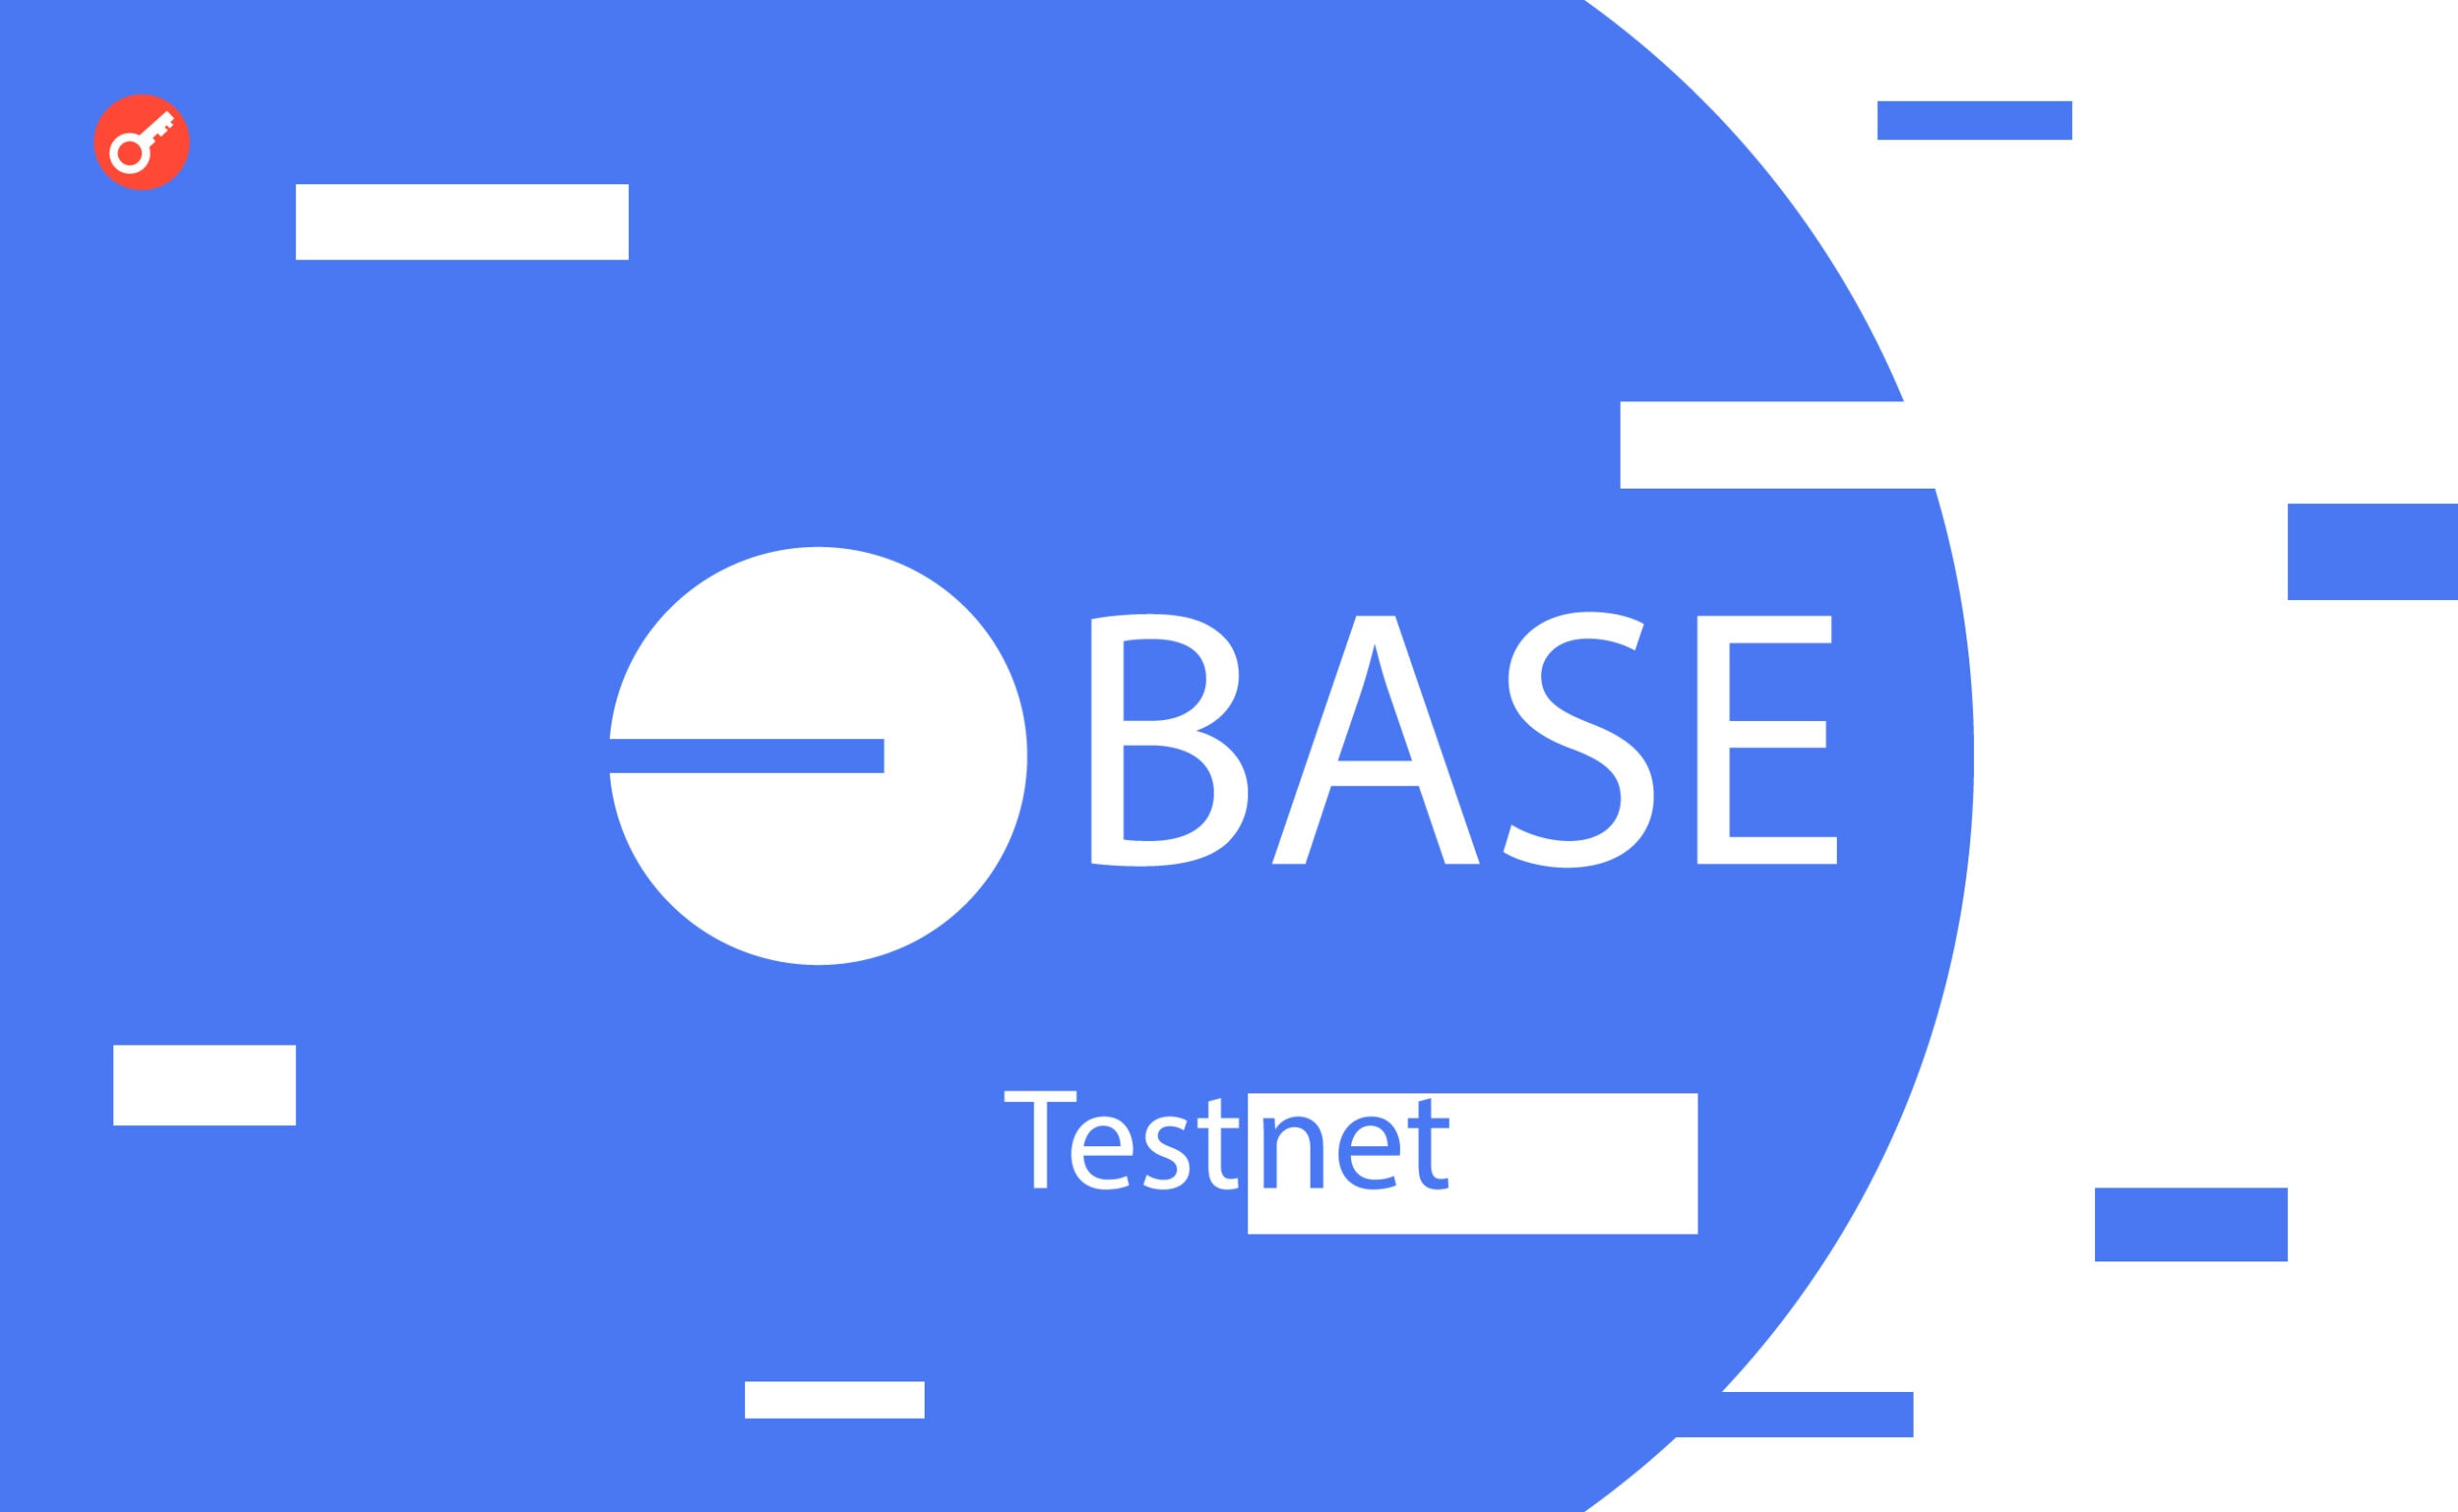 Base тестнет: инструкция по прохождению тестнета. Заглавный коллаж статьи.